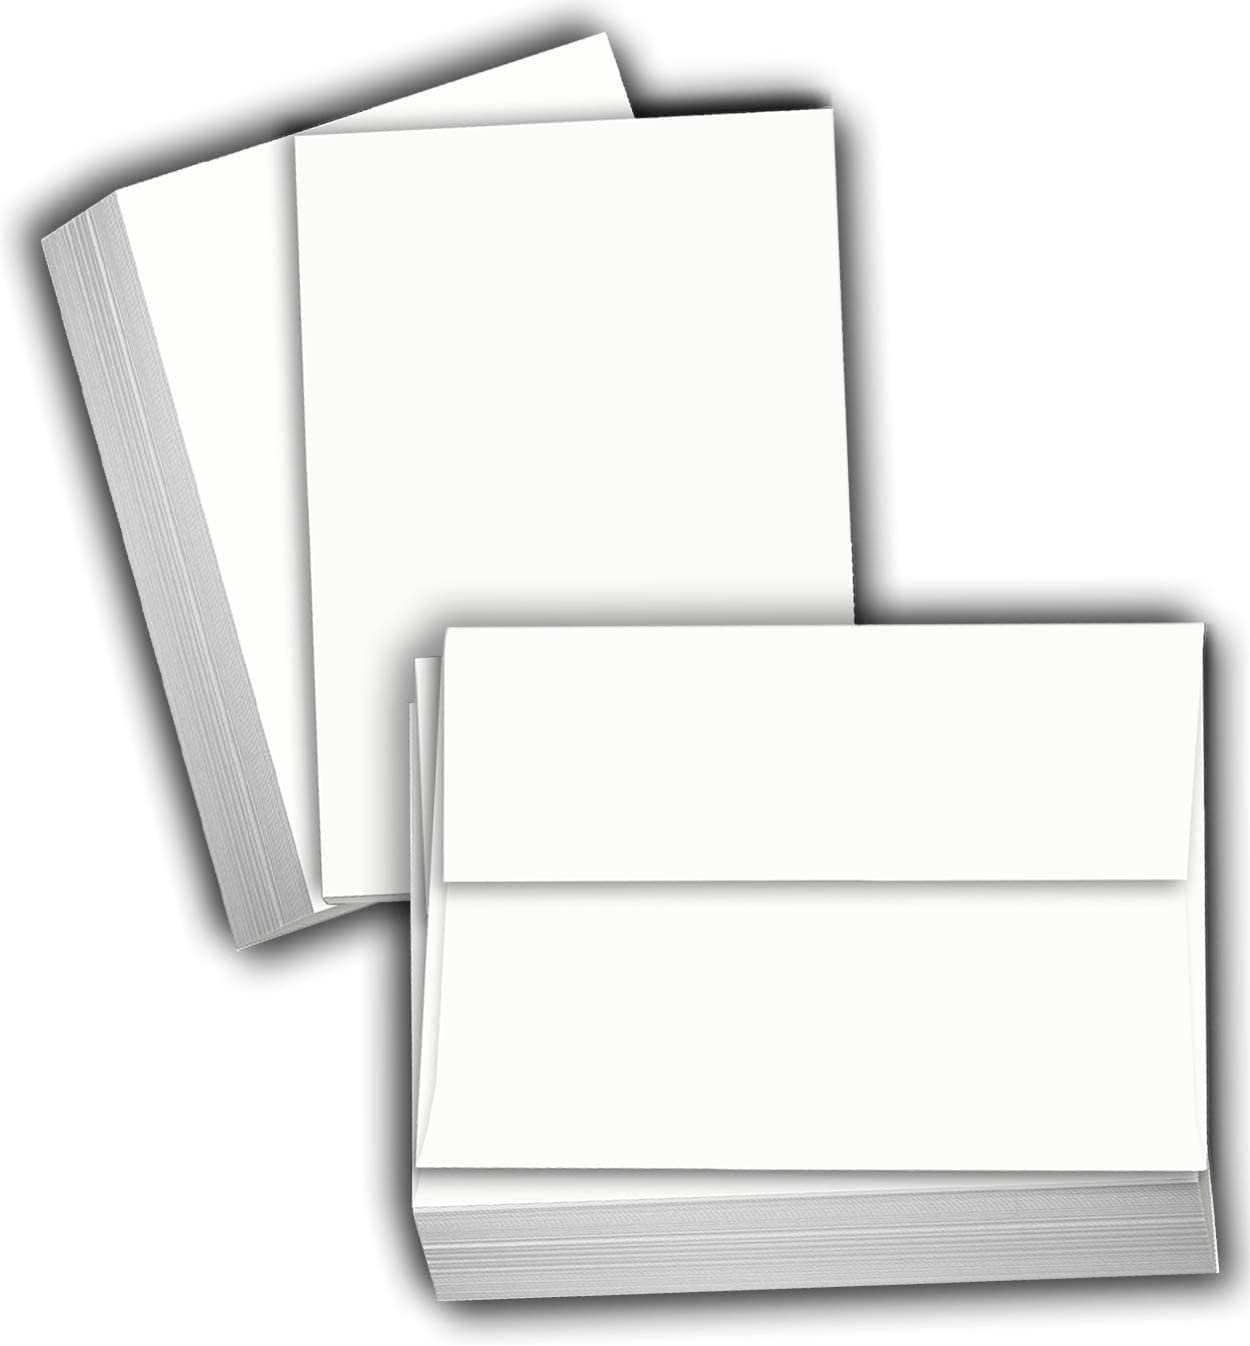 6 x 6  PLAIN WHITE CARD BLANKS  STRAIGHT EDGED  & WHITE ENVELOPES 